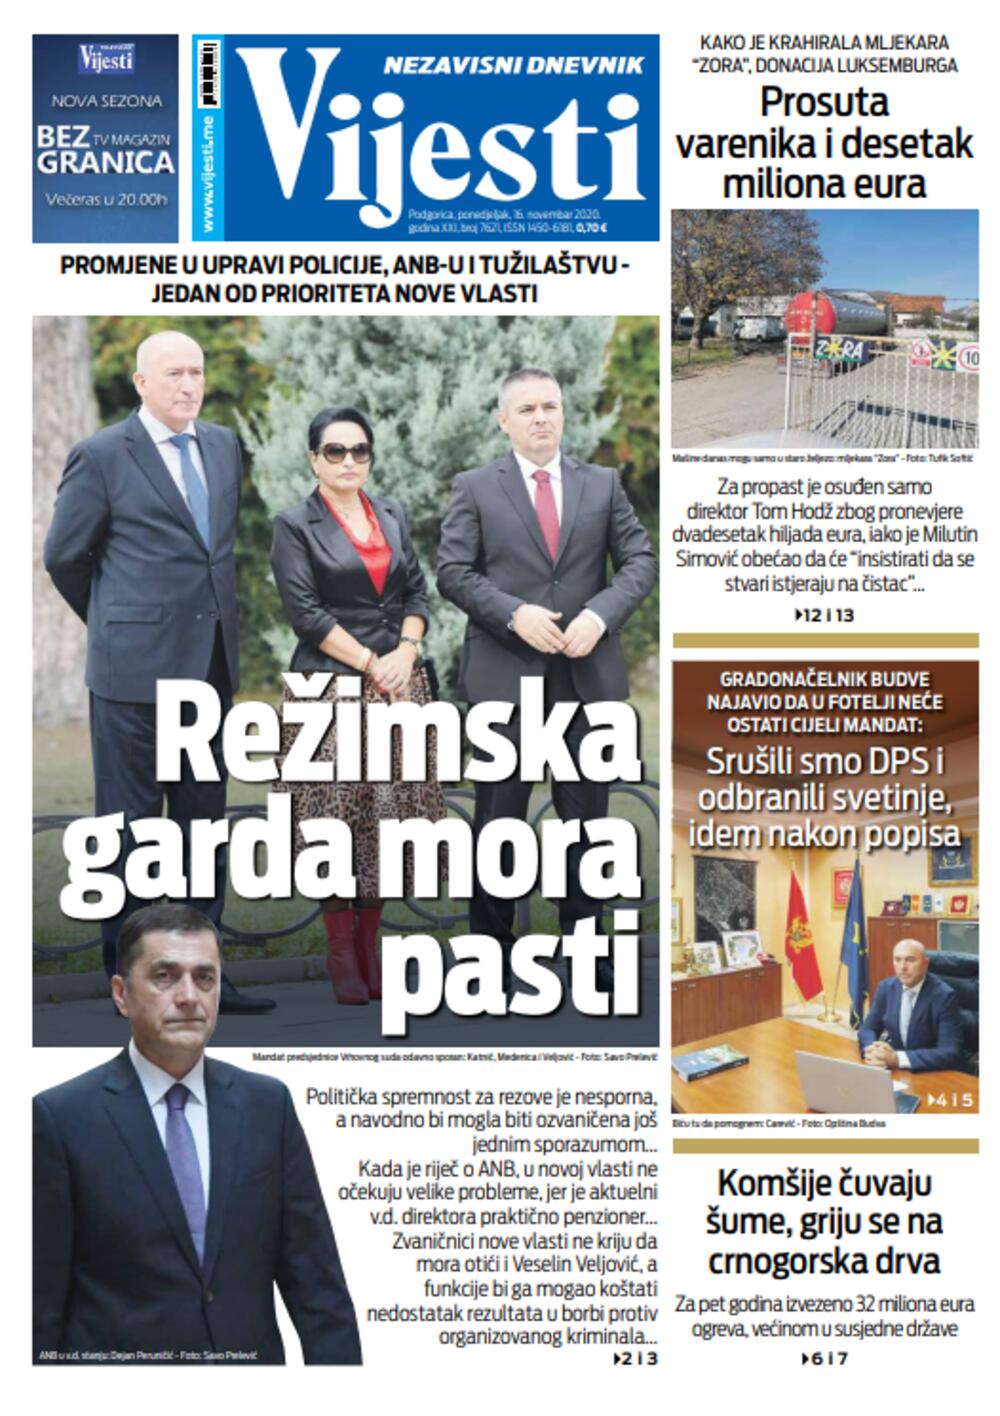 Naslovna strana "Vijesti" za 16. novembar, Foto: Vijesti